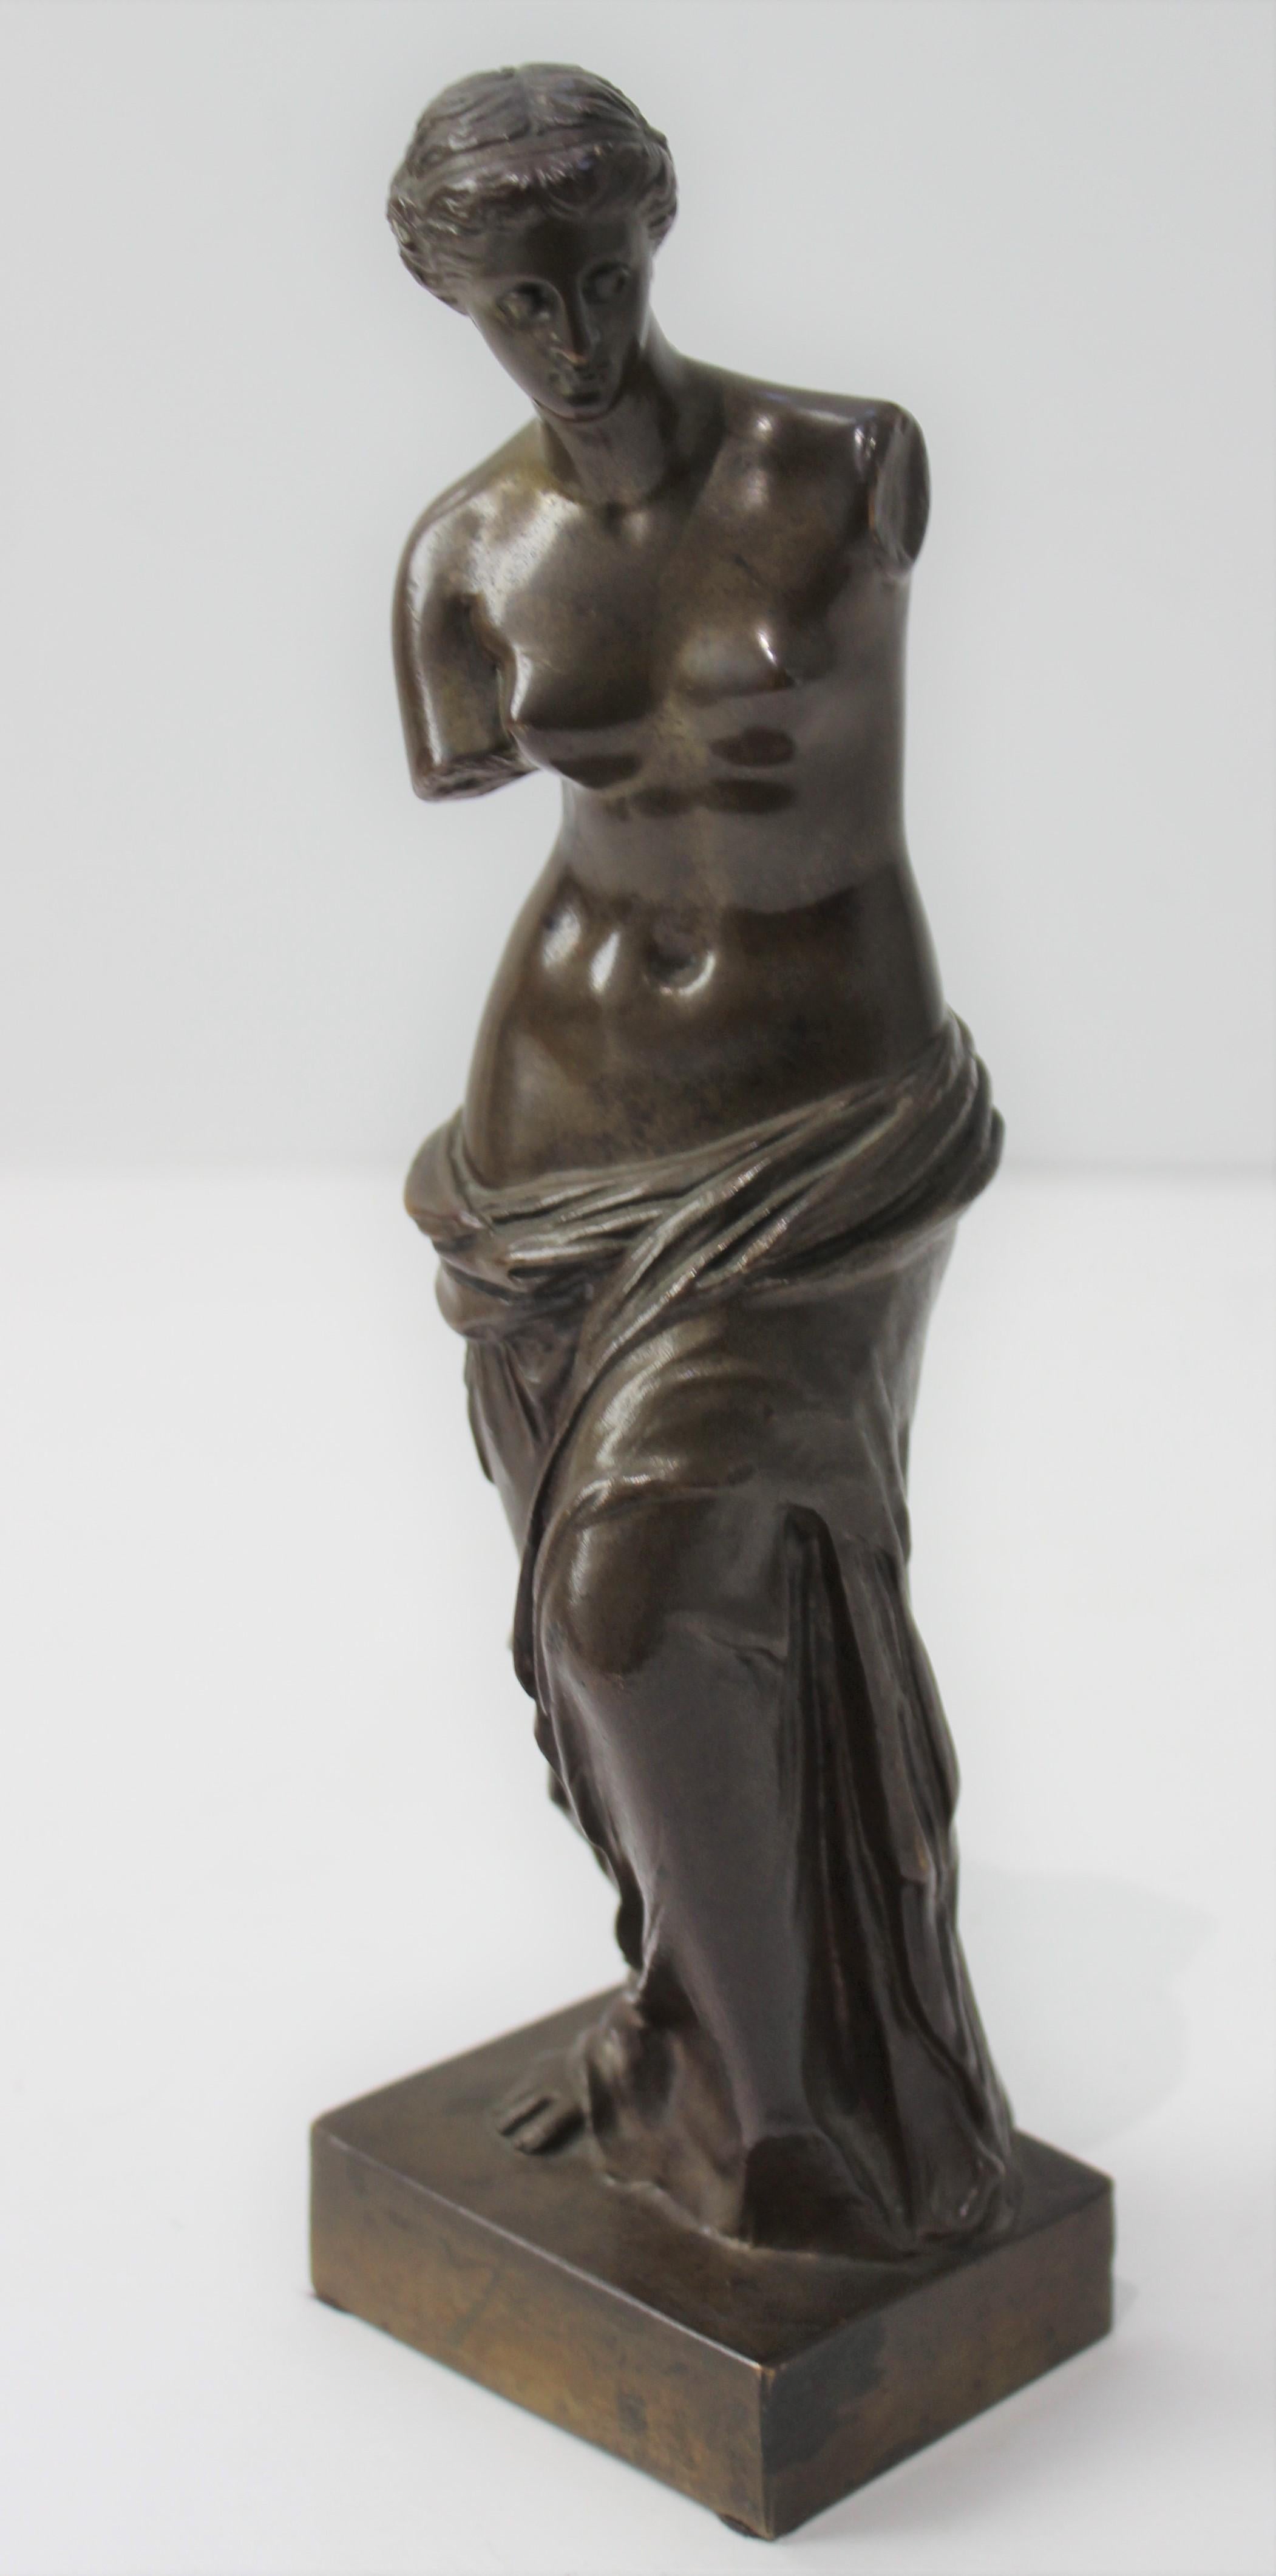 Dieser Bronzeguss der Venus de Milo stammt aus dem späten 19. Jahrhundert und wurde während der 